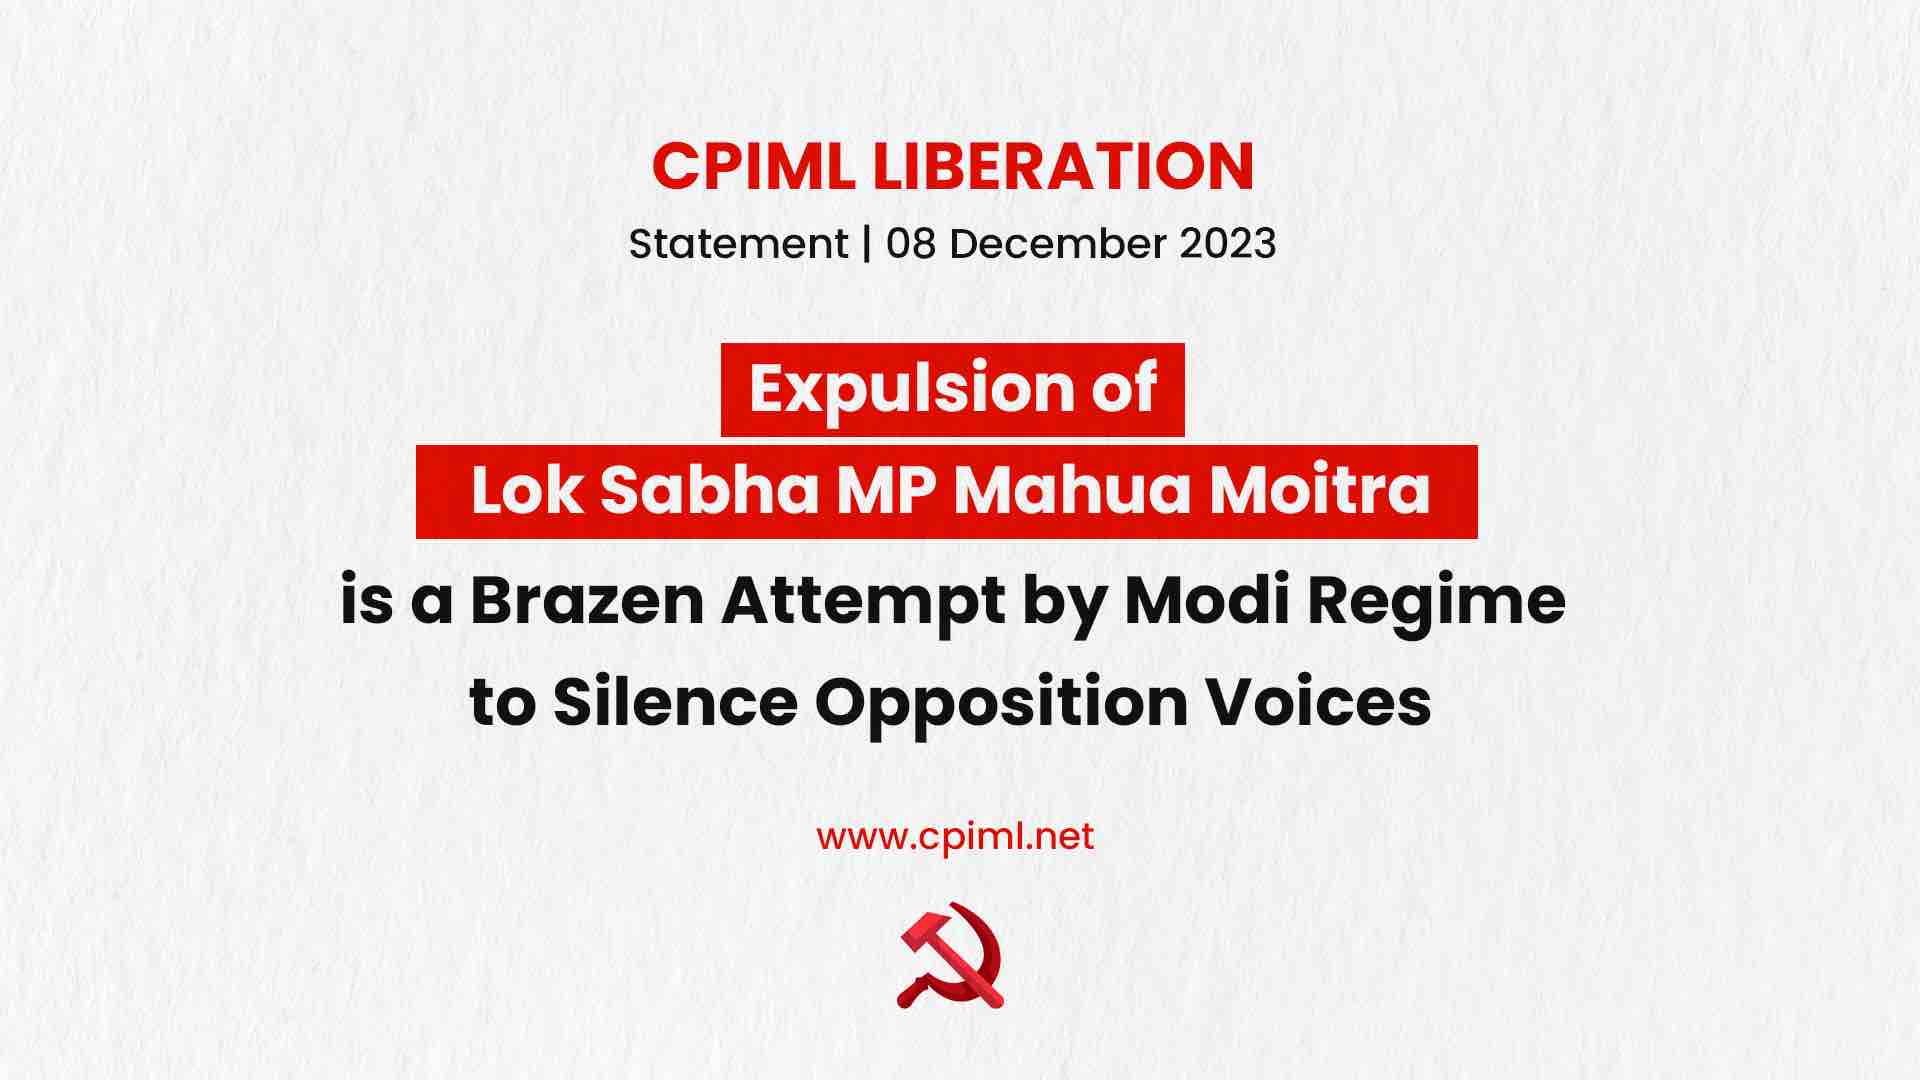 Expulsion of Mahua Moitra: Fascist Strike on India's Parliamentary Democracy